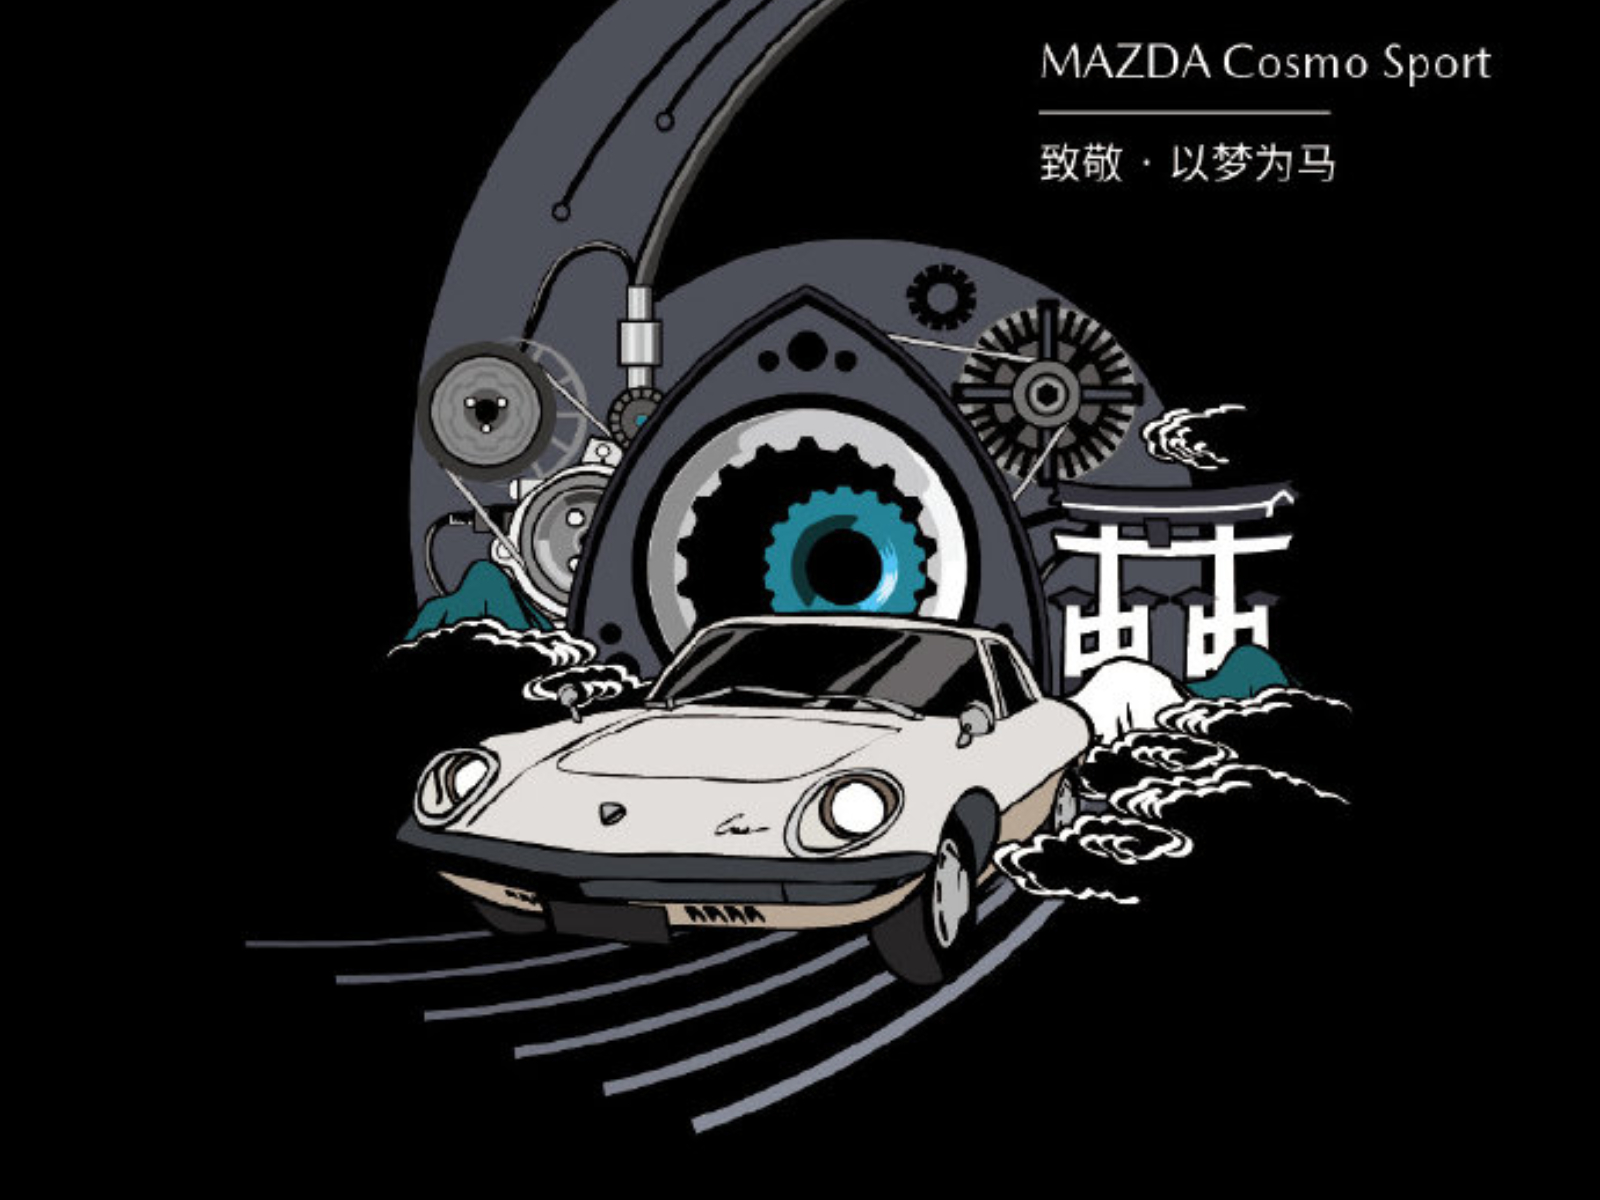 マツダ新型ロータリーレンジエクステンダーが東京モーターショーに登場